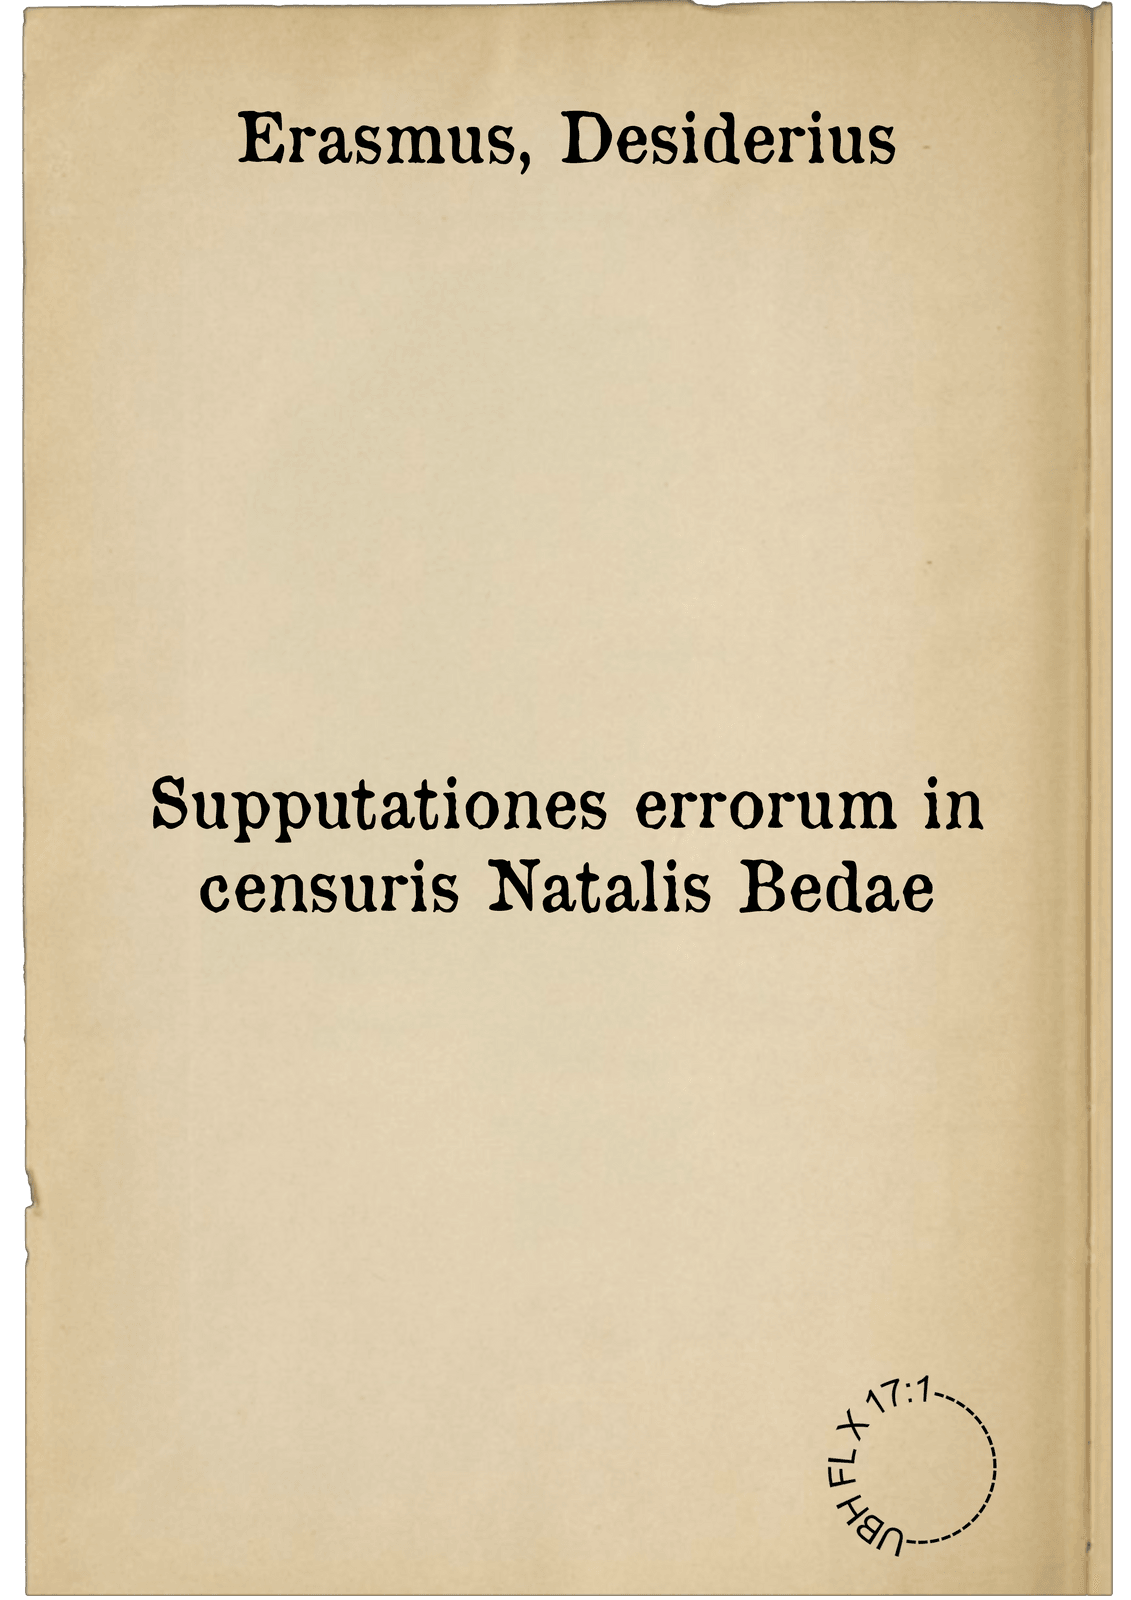 Supputationes errorum in censuris Natalis Bedae